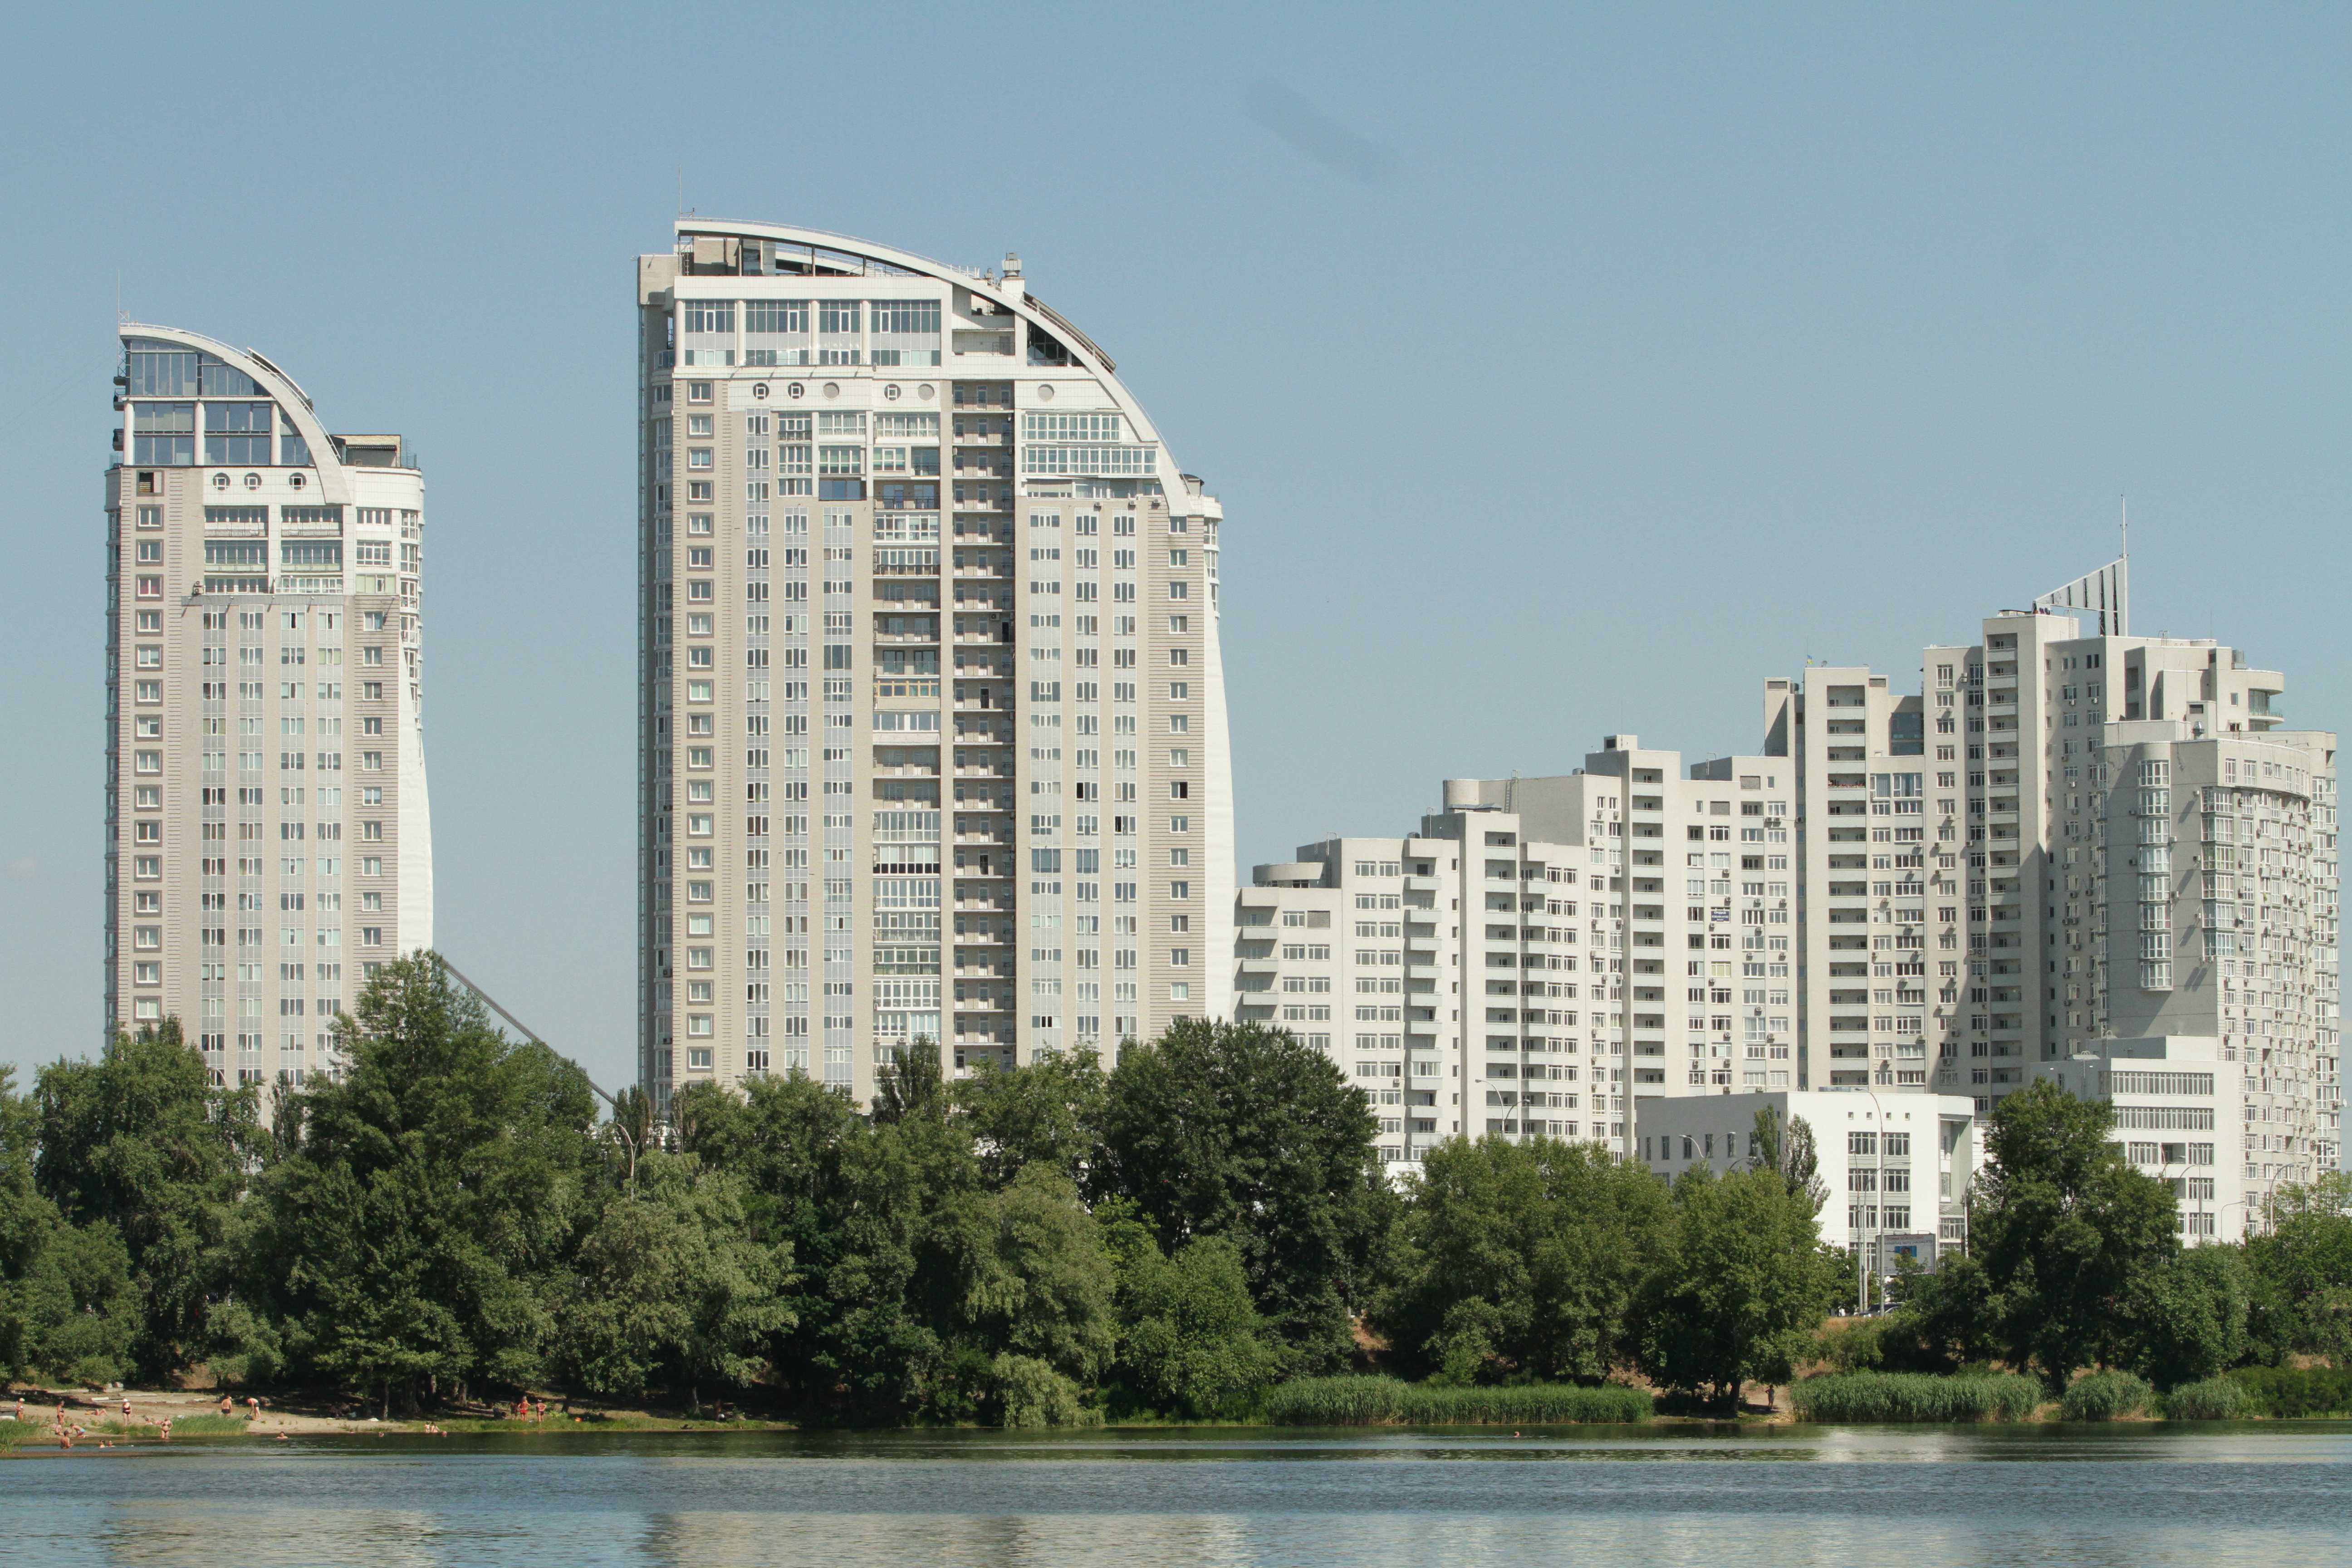  Цены на жилье в Украине: как рынок недвижимости реагирует на выборы и курс валют